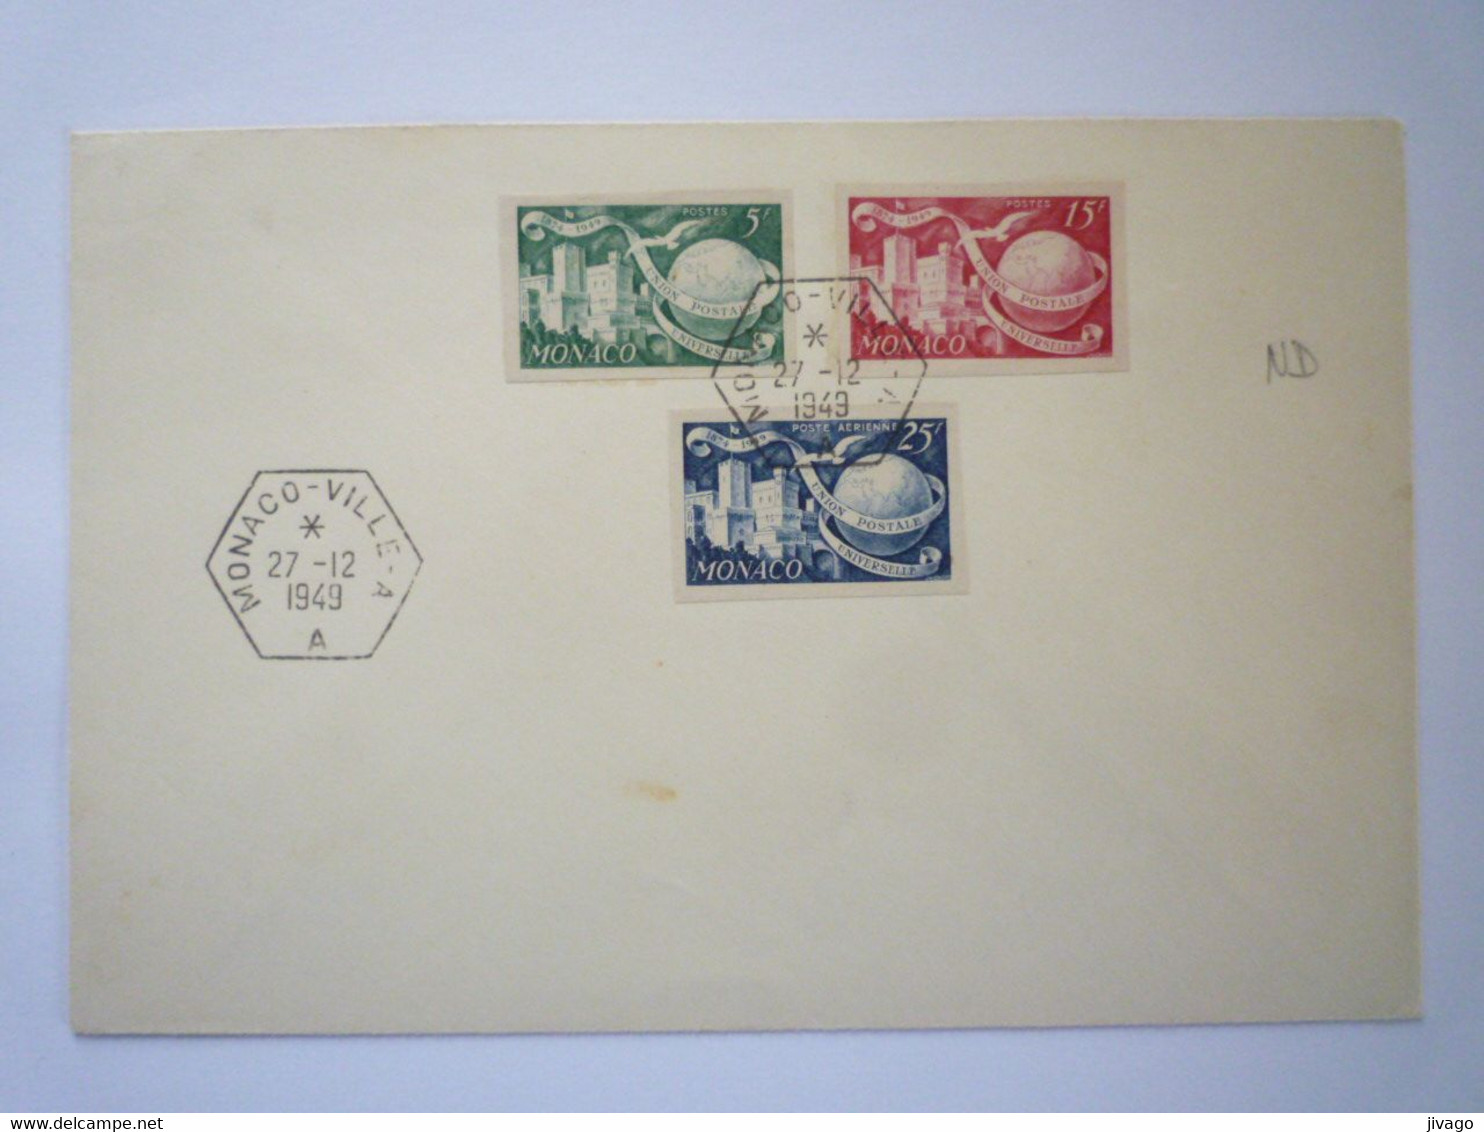 22 - M 4162  Enveloppe Au Départ De MONACO - VILLE - A   (Timbres Non Dentelés)  1949   XXX - Covers & Documents